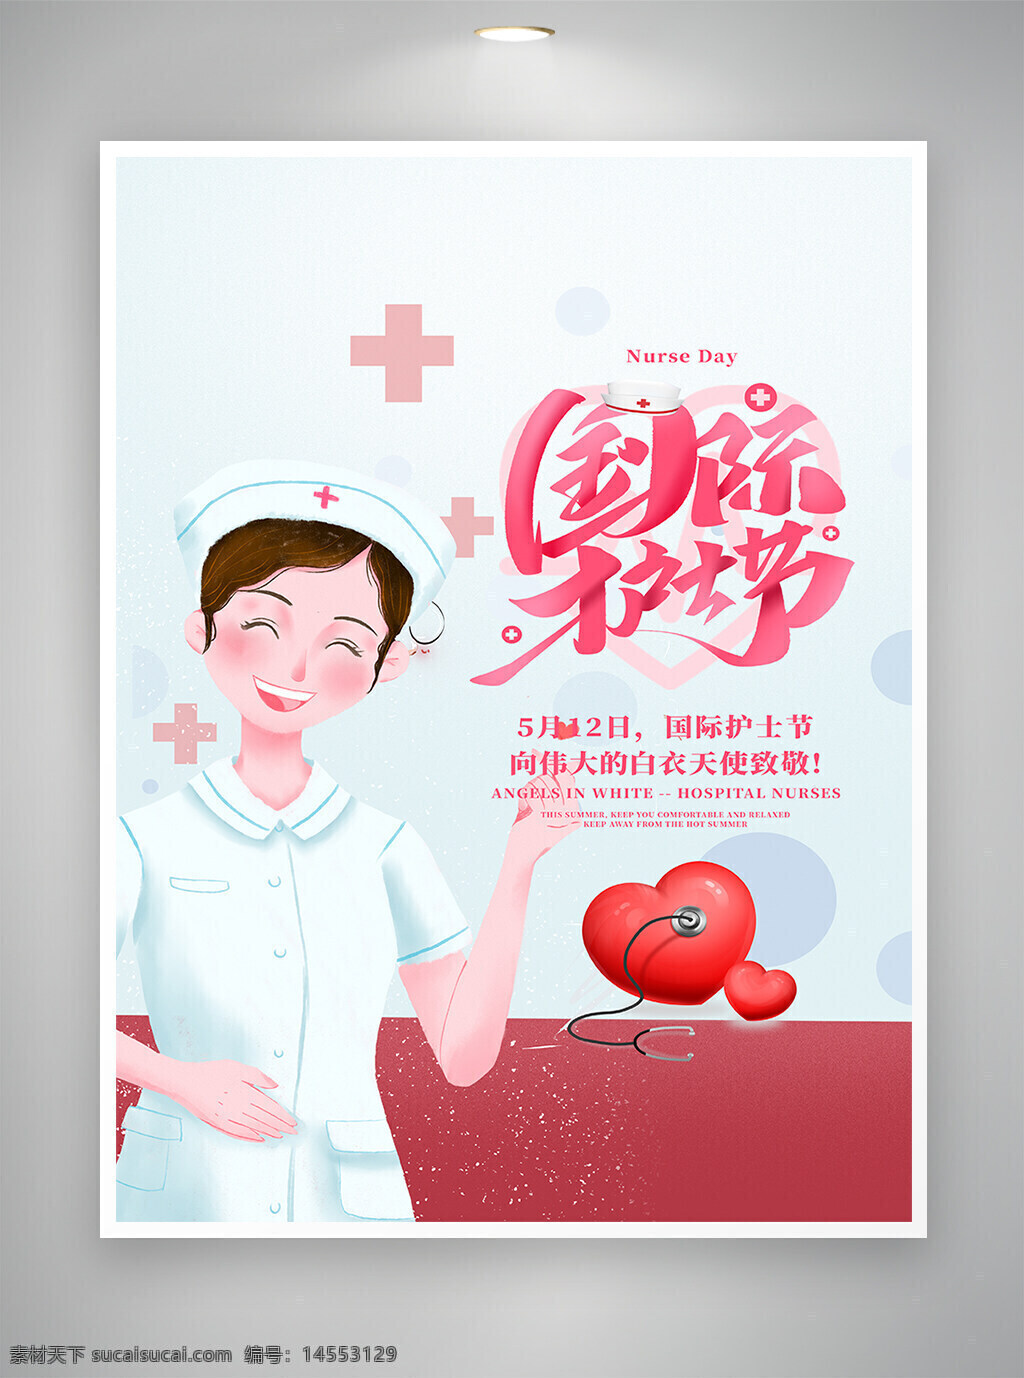 国际护士节 护士节 护士节宣传 护士节海报 卡通海报 简约海报 海报